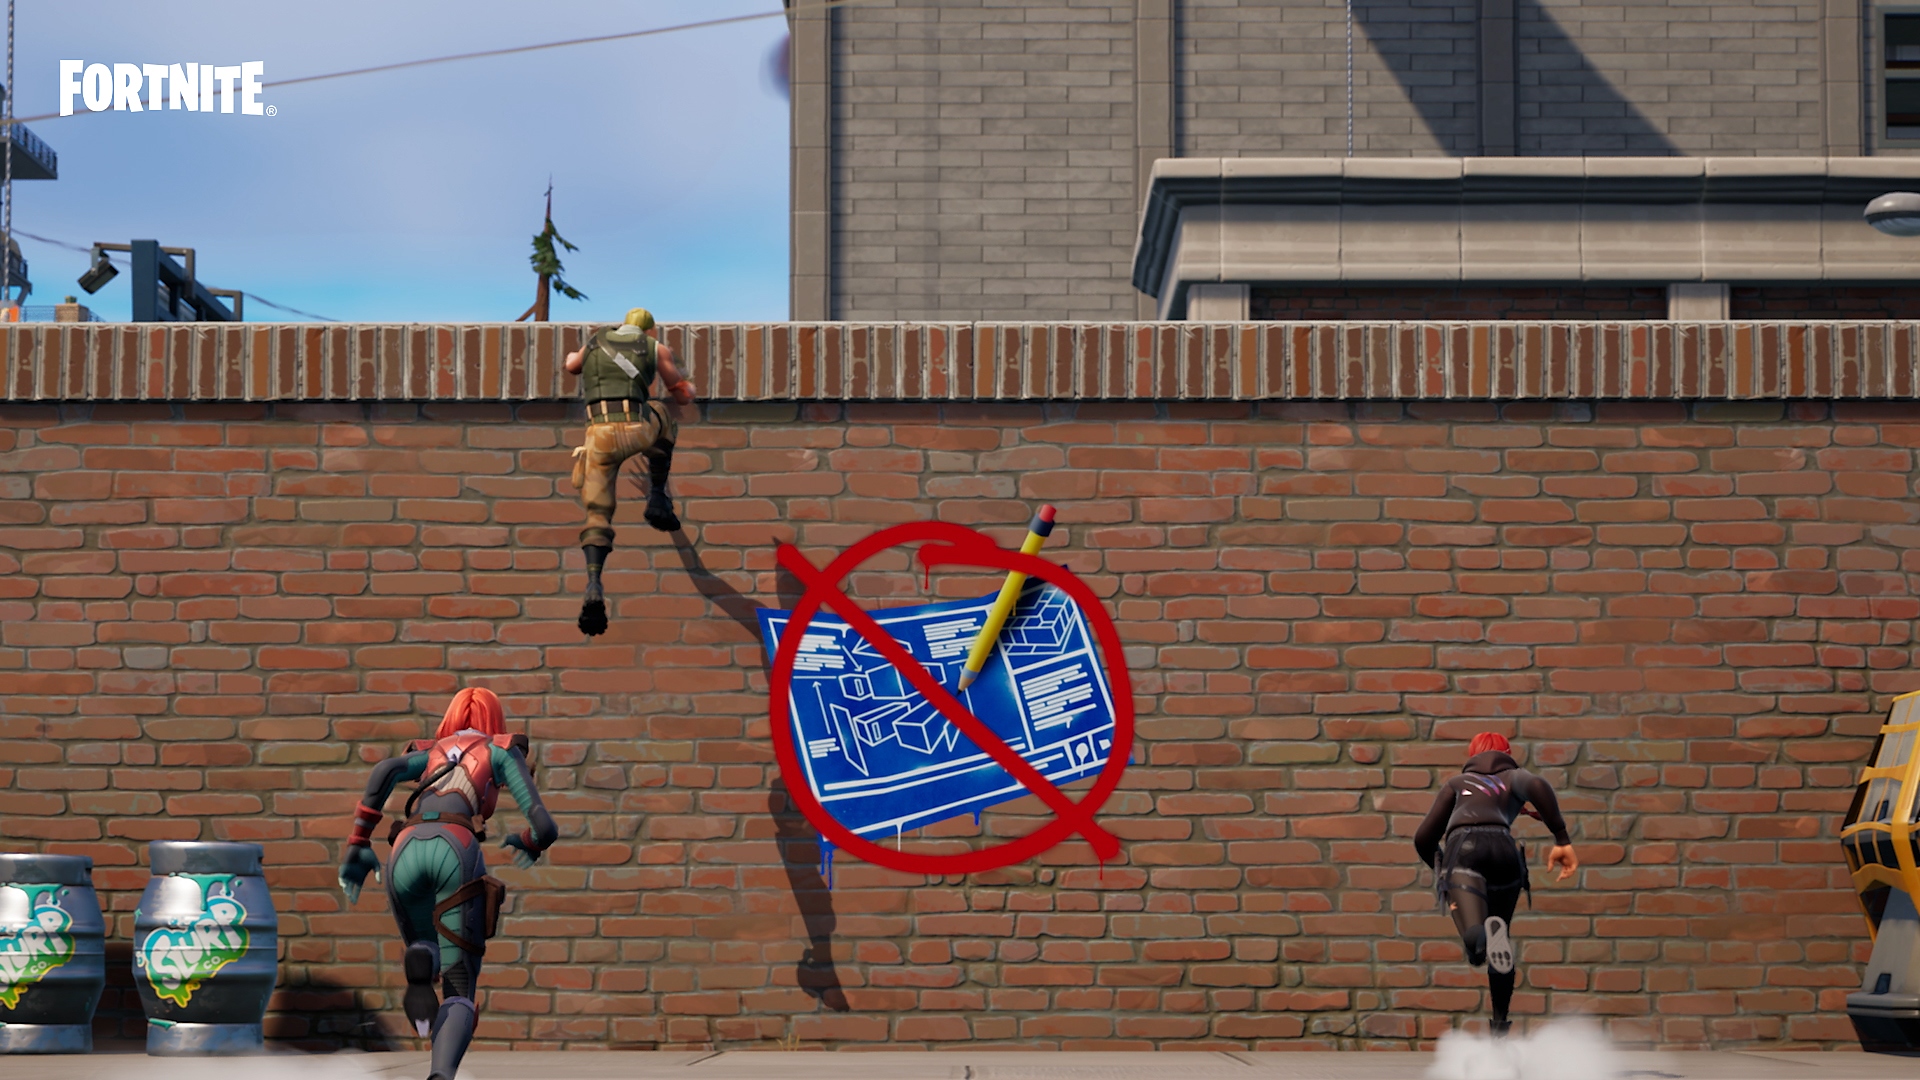 Λειτουργία Fortnite zero build - χαρακτήρες που σκαρφαλώνουν σε τοίχο